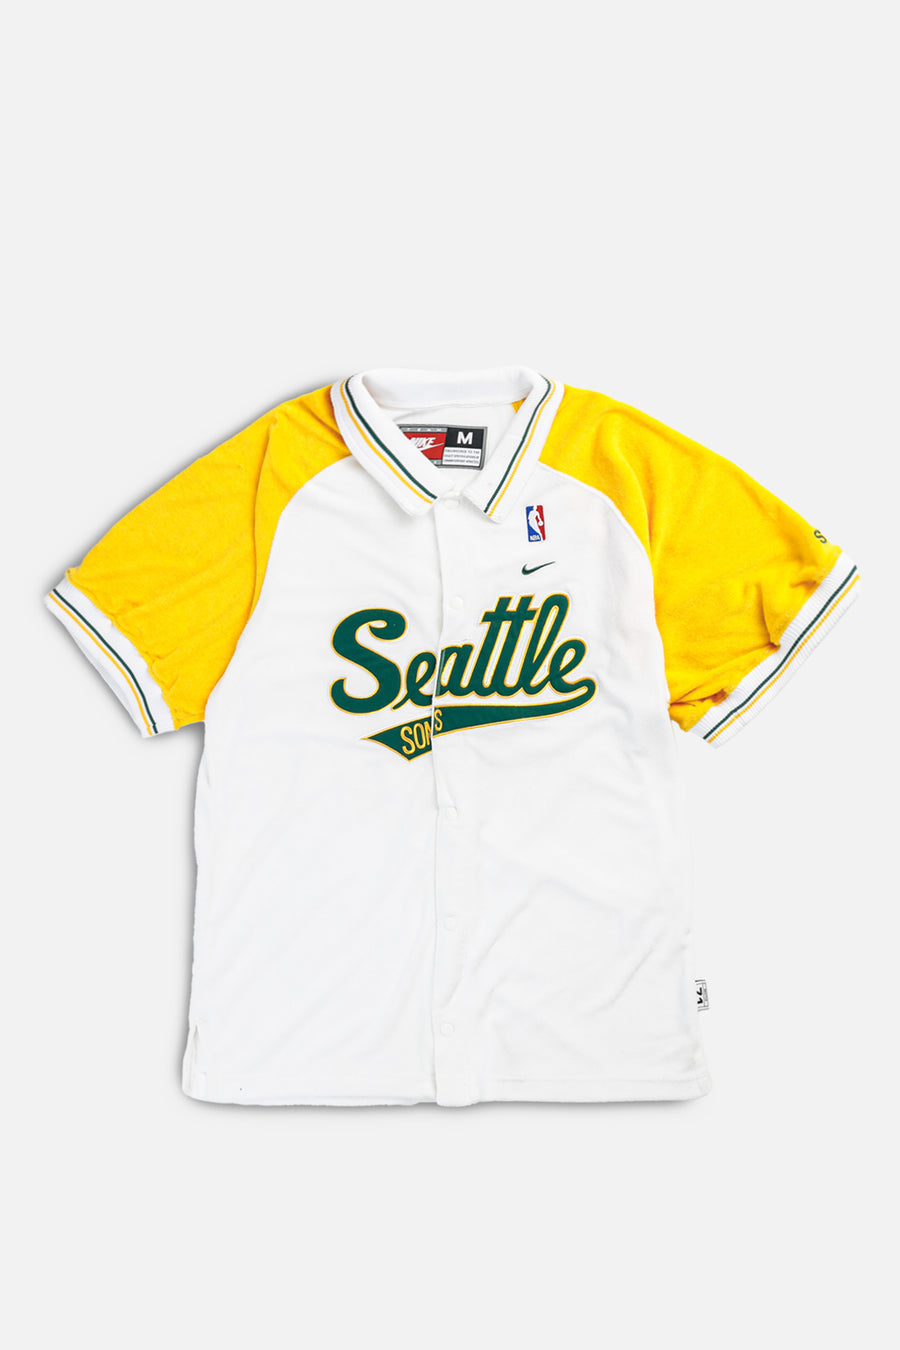 Vintage Seattle SuperSonics NBA Warmup Tee - M